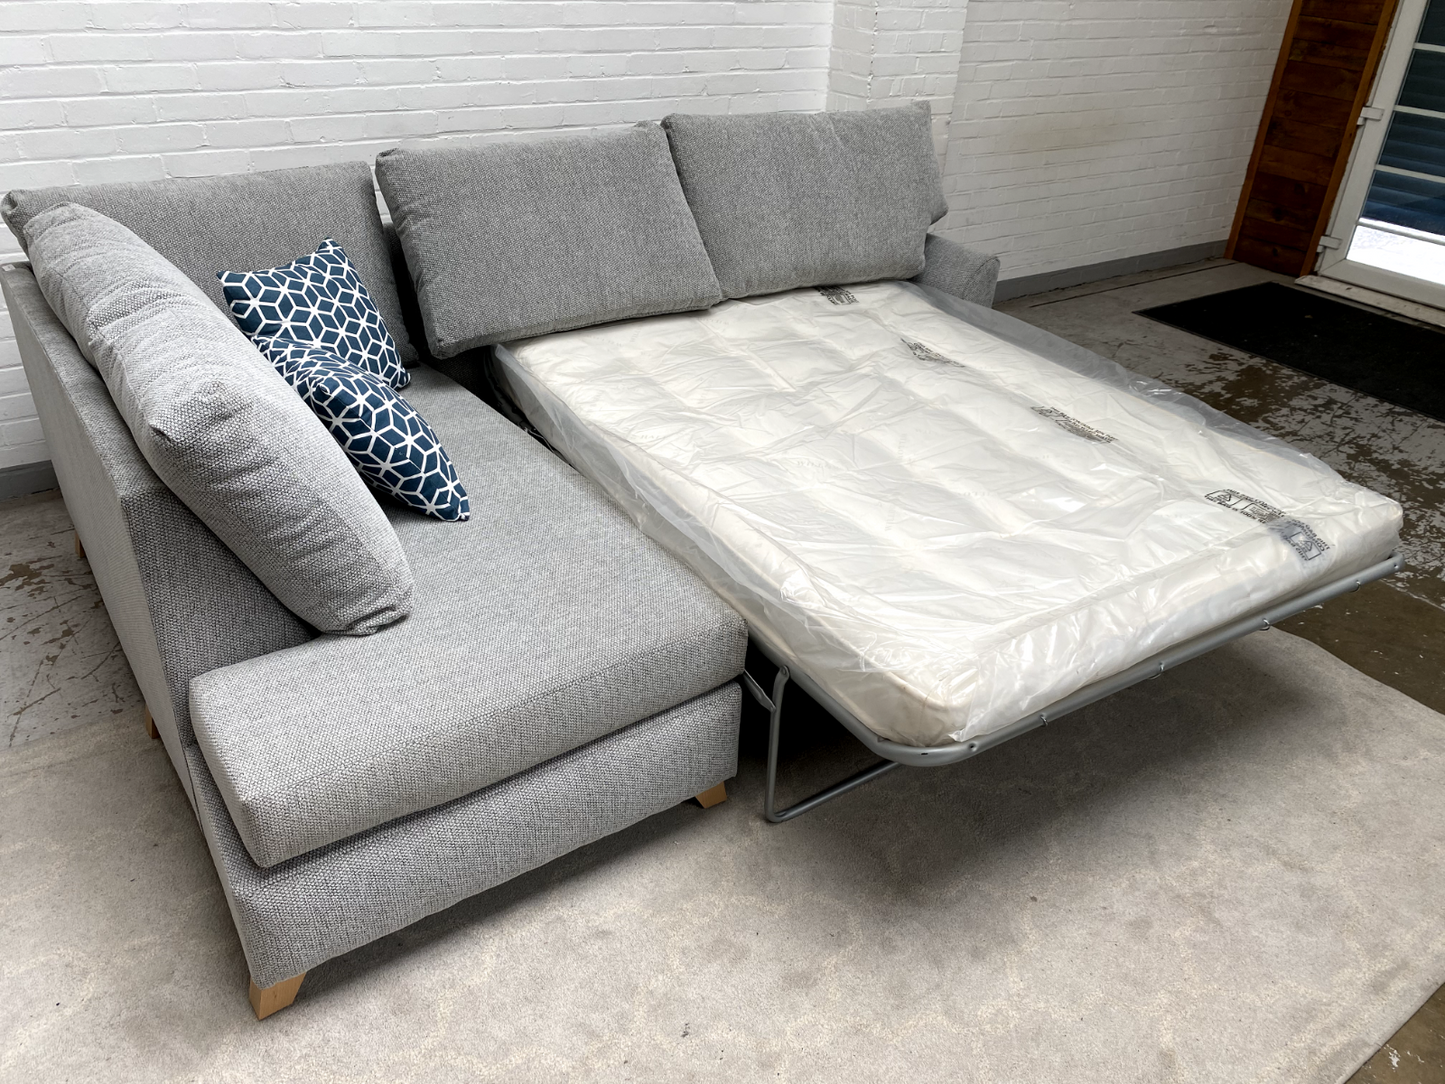 Gainsborough bari corner sofa bed